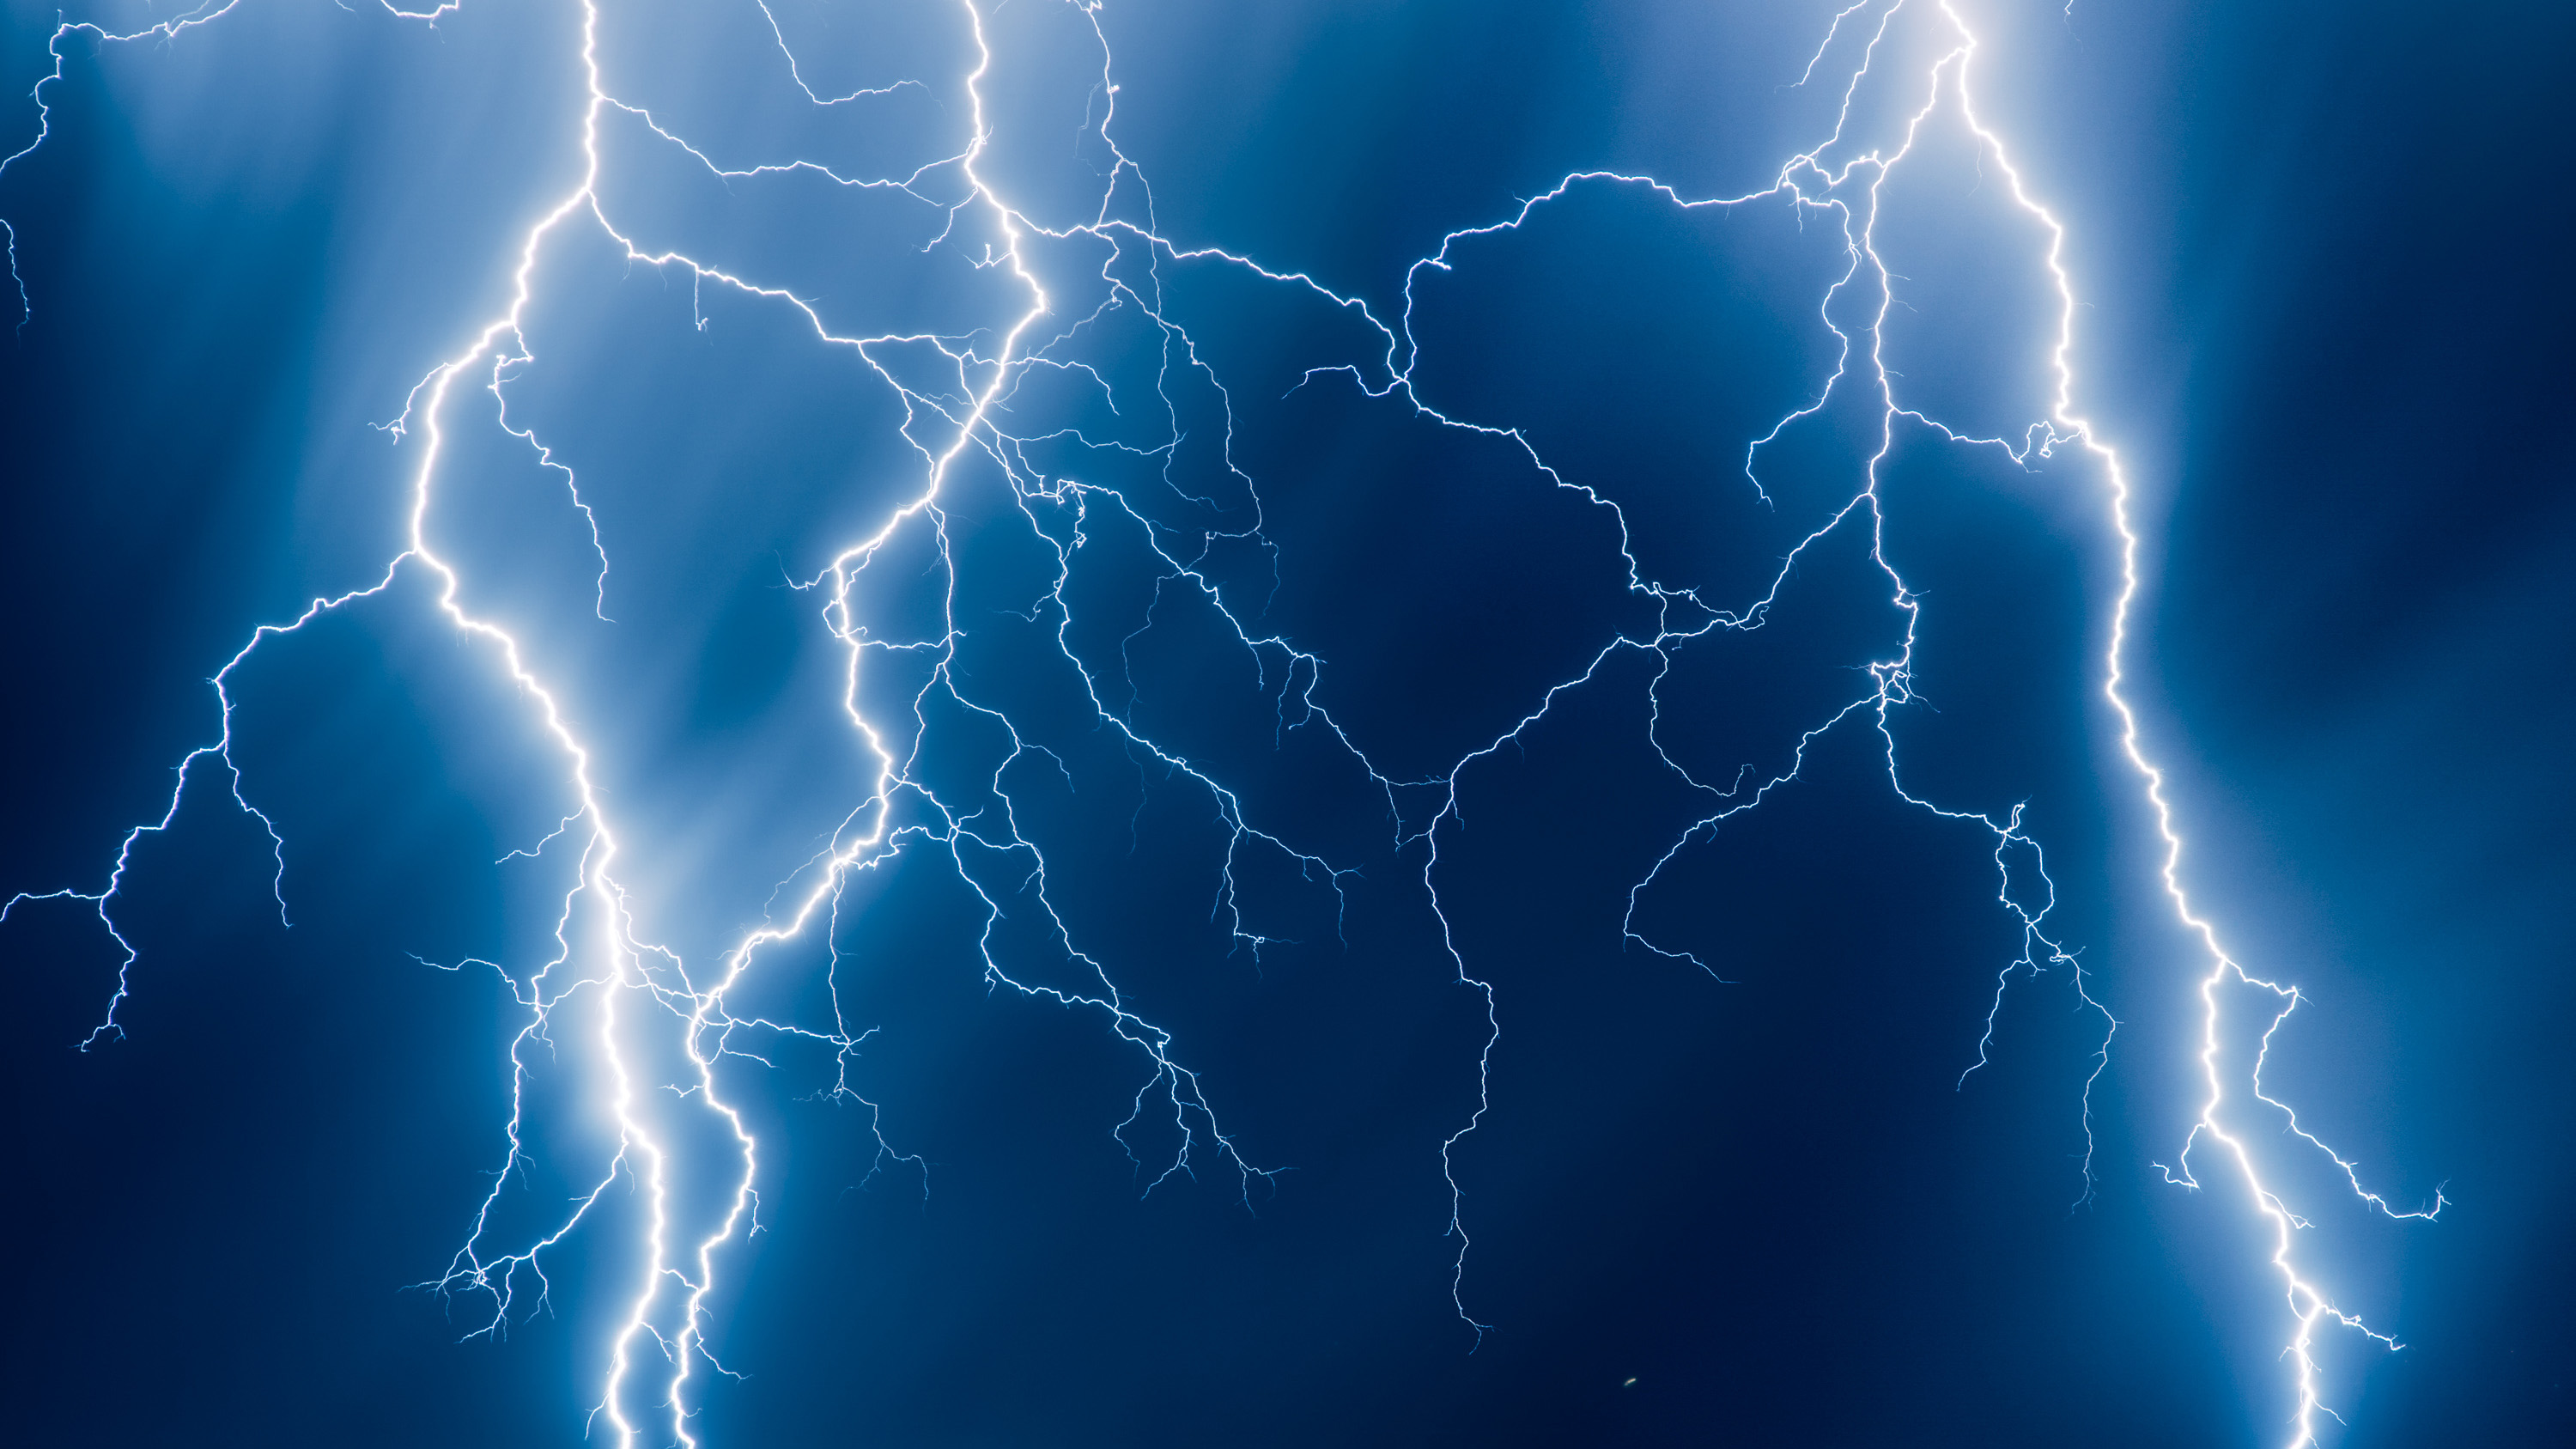 lightning bolt images